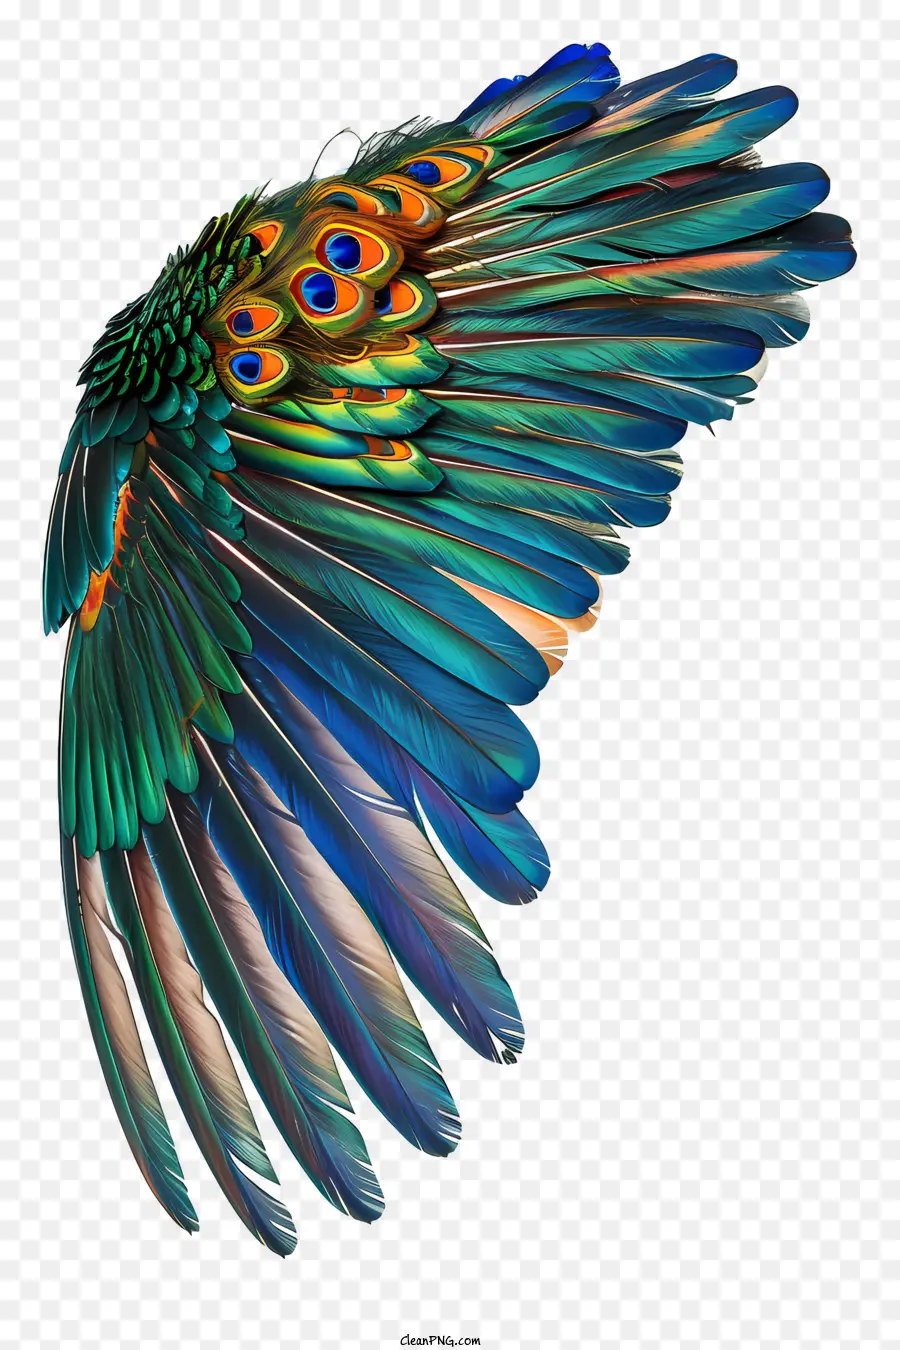 Bird wing